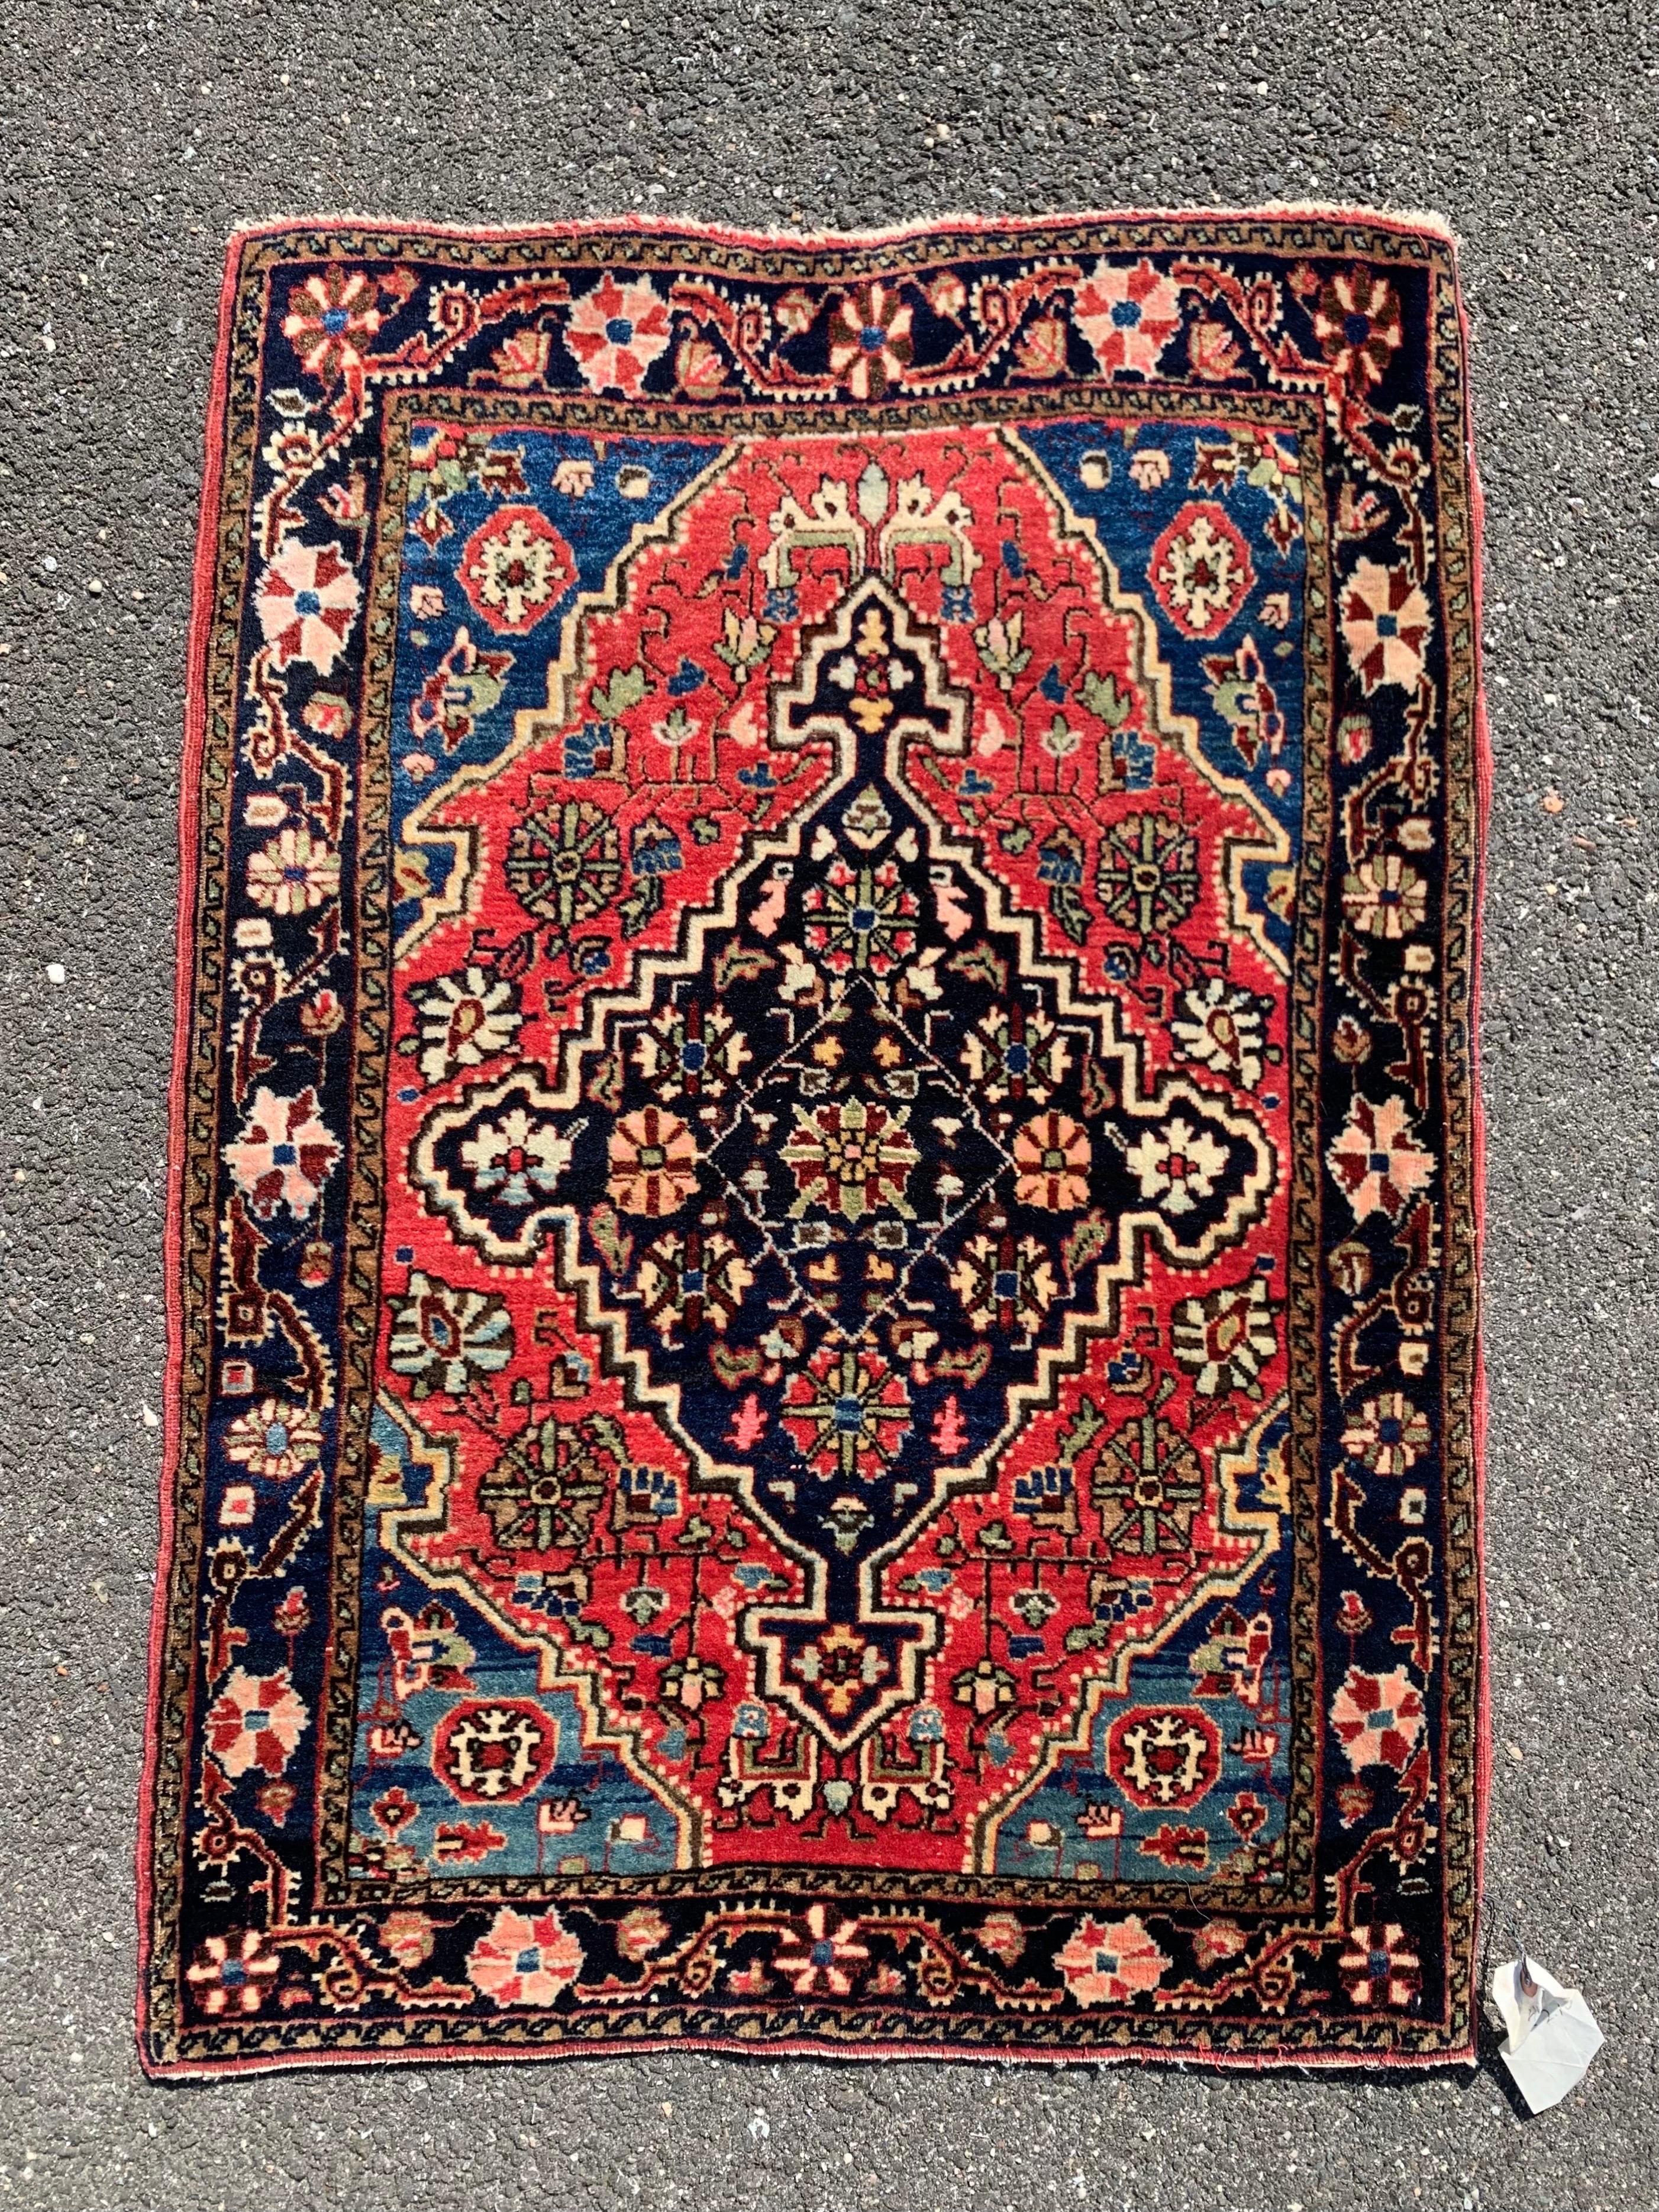 Unverfälschter antiker Farahan Sarouk aus den 1930er Jahren mit den Maßen 2,2 x 2,6 Fuß.

Persische Farahan-Sarouk-Teppiche wurden im Dorf Sarouk gewebt, aber diese Teppiche erhielten den Namen 